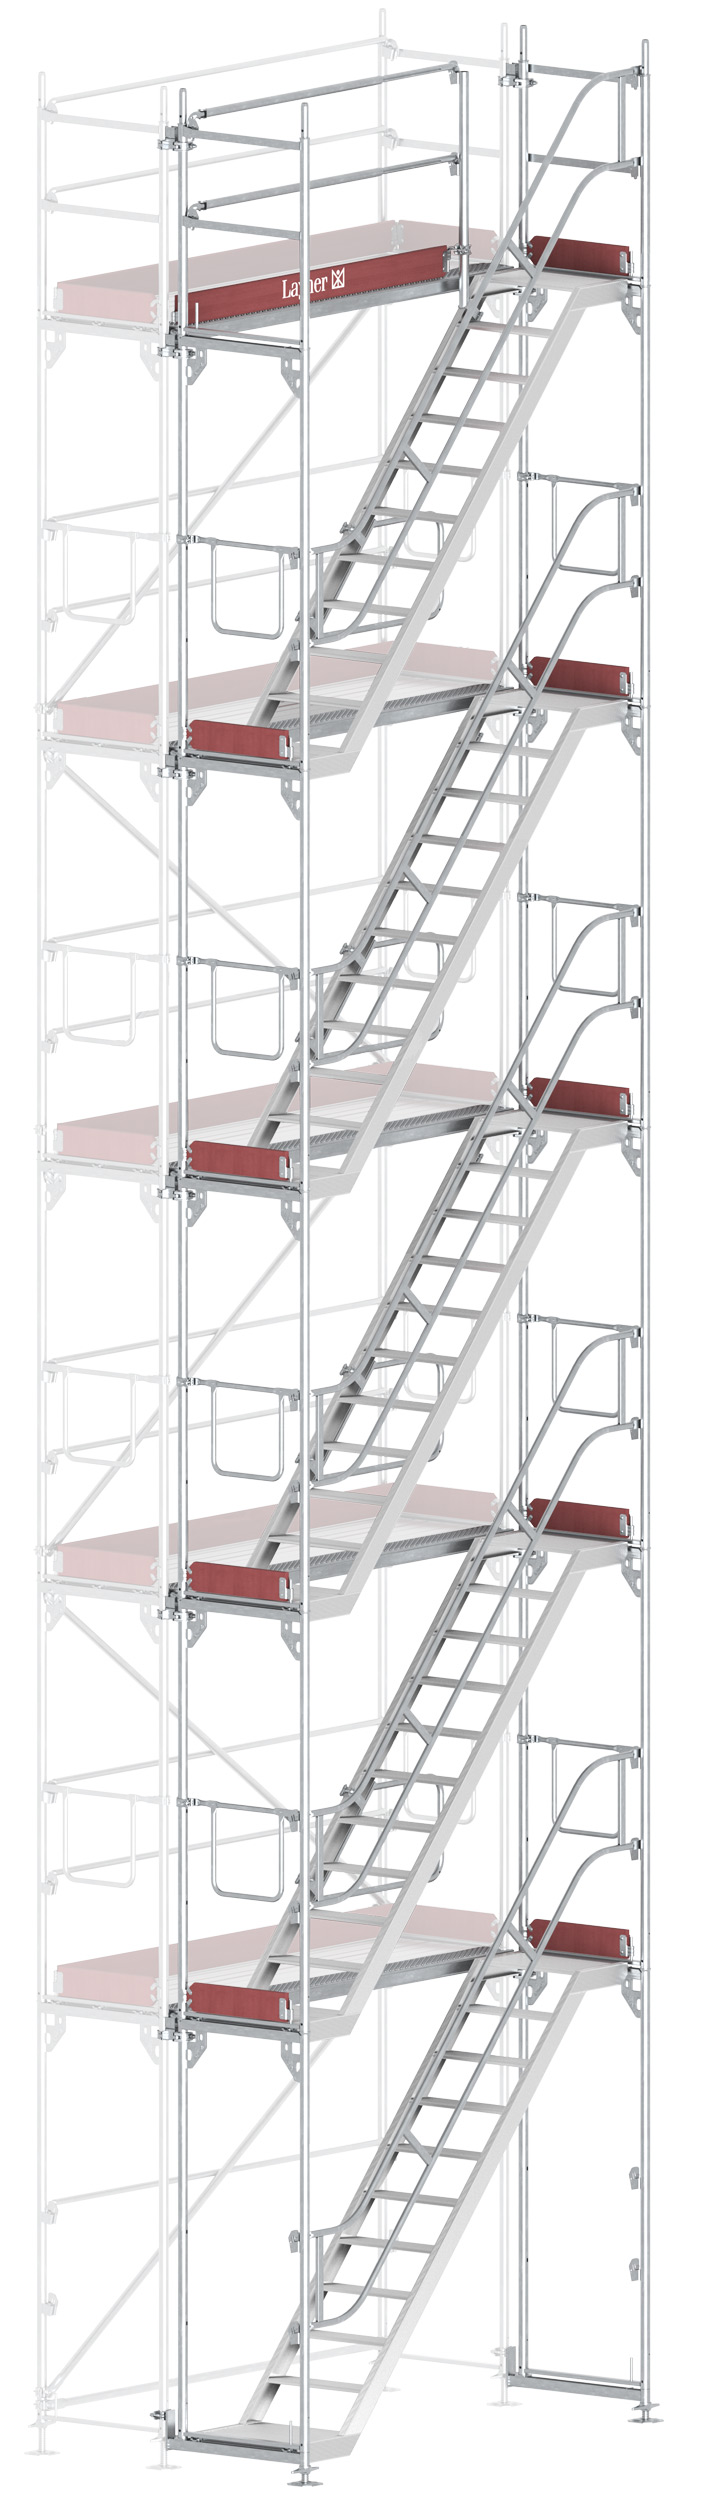 Layher Blitz Treppenturm-Vorbau Stahl - 2,57 x 10,20 m Erweiterung Treppenaufstieg nach TRBS 2121-2 für Layher Fassadengerüst (LG-1753-1000-VS) Bild-01